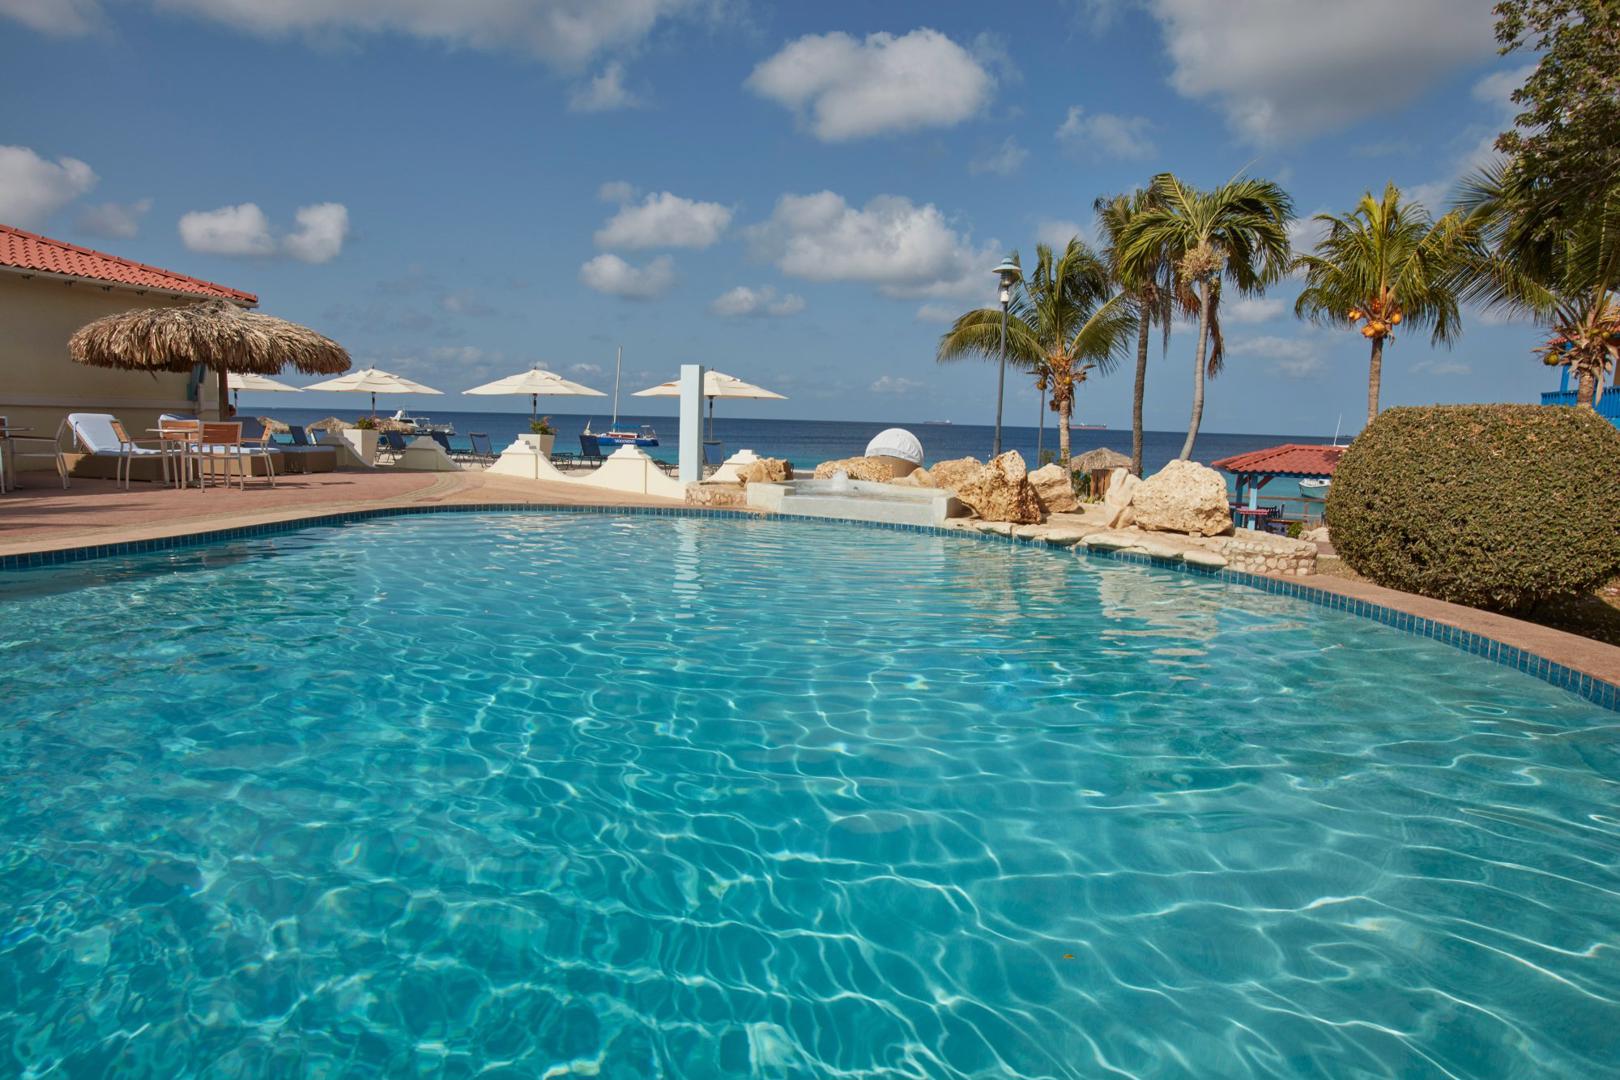 Divi Flamingo Beach Resort en Casino - Kralendijk - Bonaire